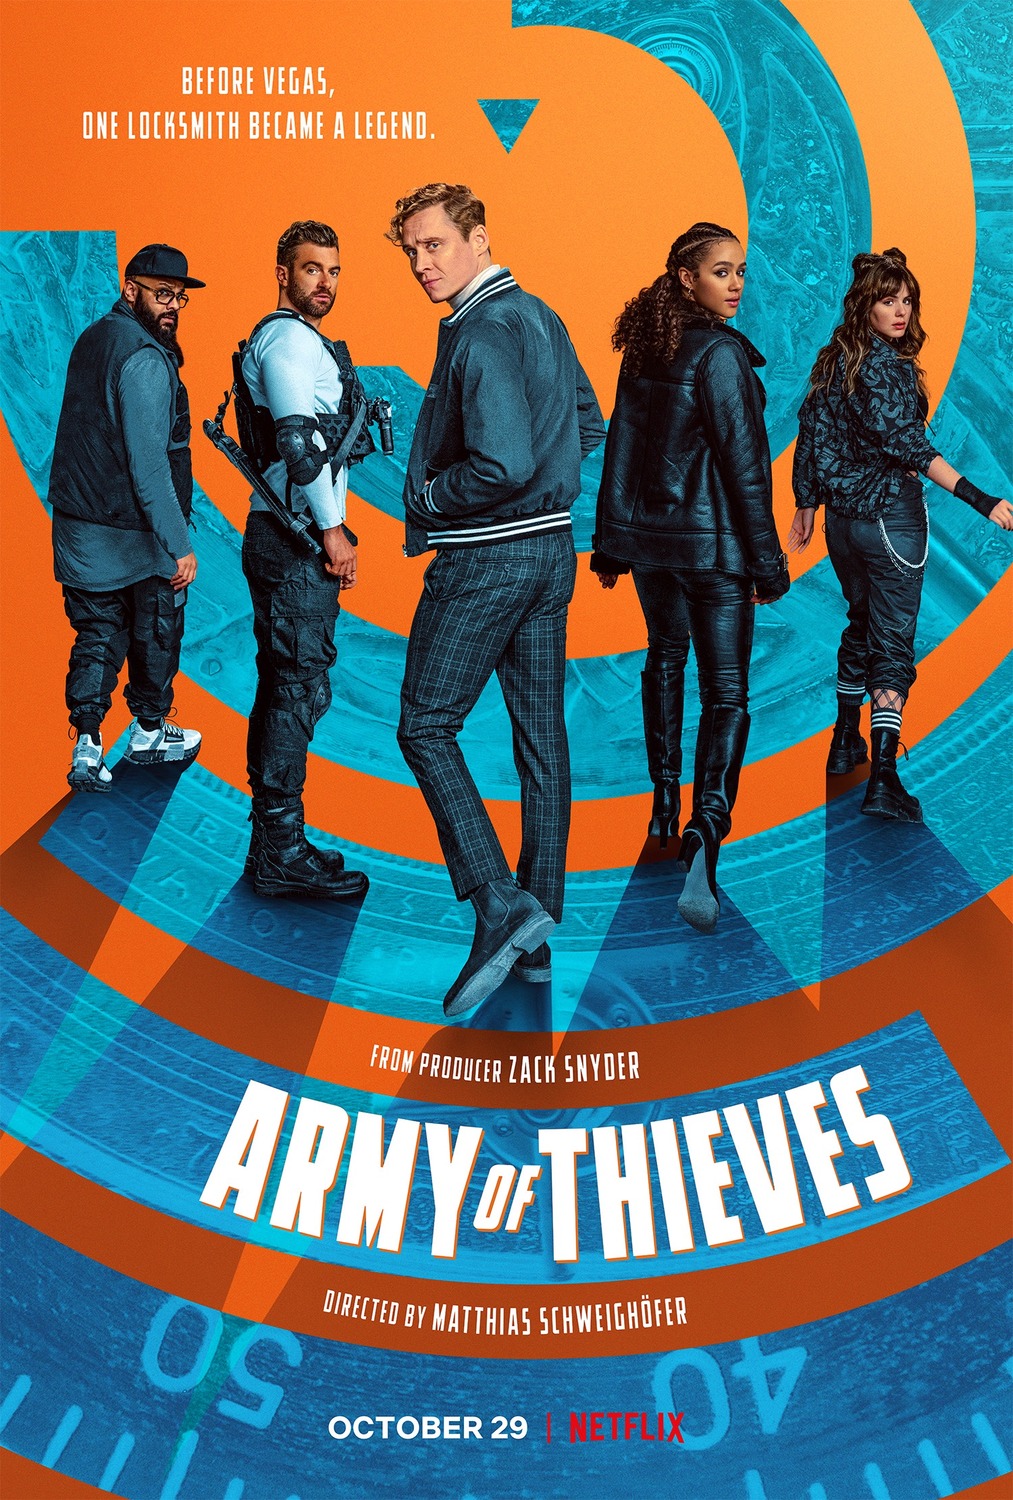 ดูหนังออนไลน์ฟรี Army of Thieves 2021 แผนปล้นยุโรปเดือด moviehdfree